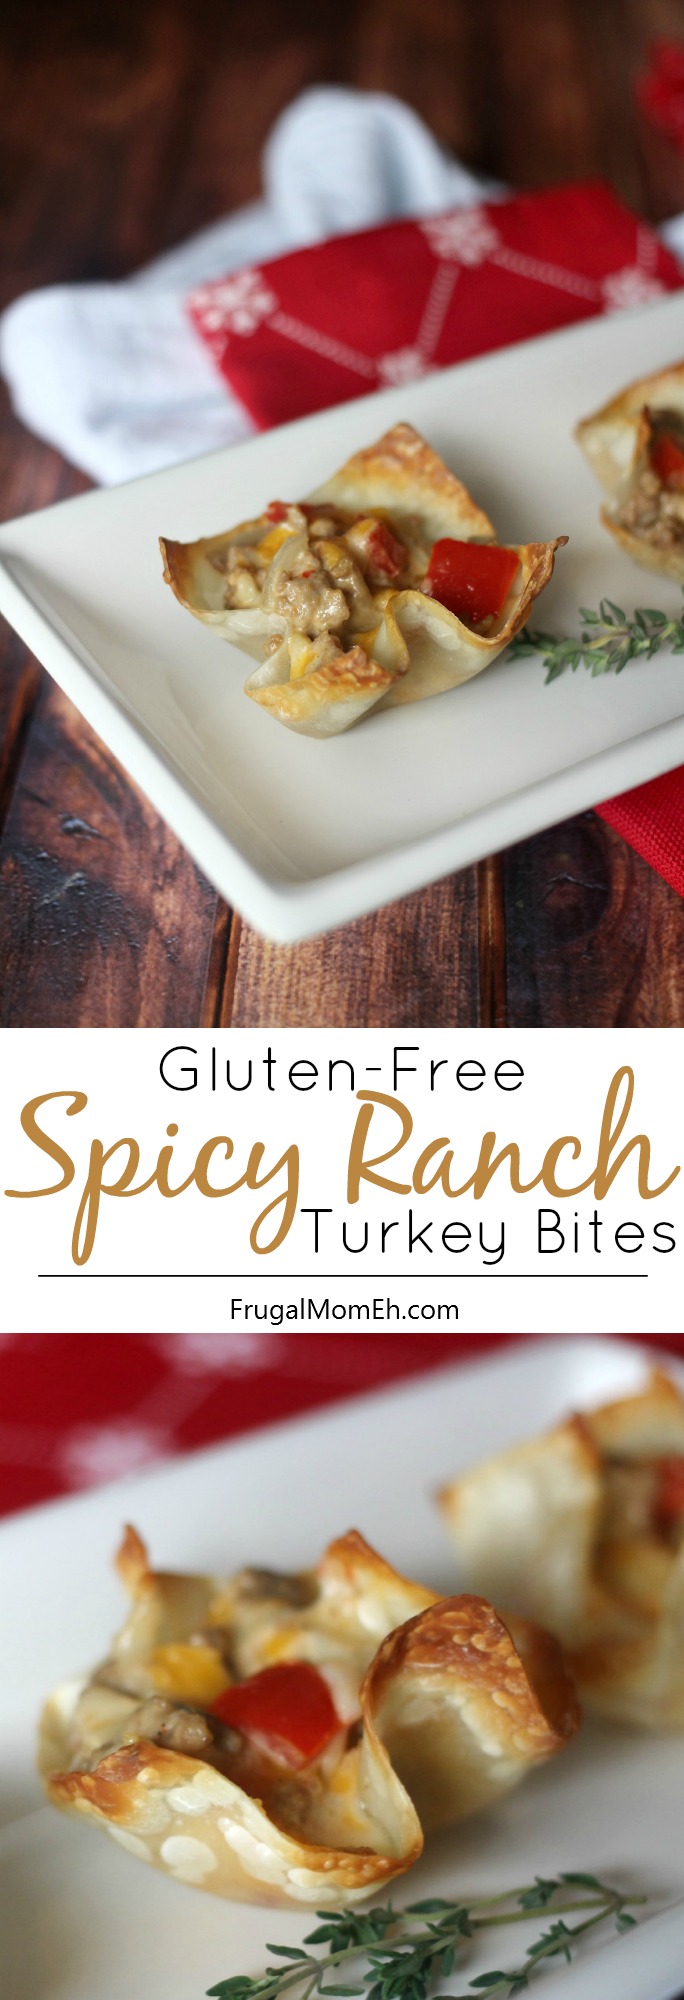 Gluten-Free Spicy Ranch Turkey Bites